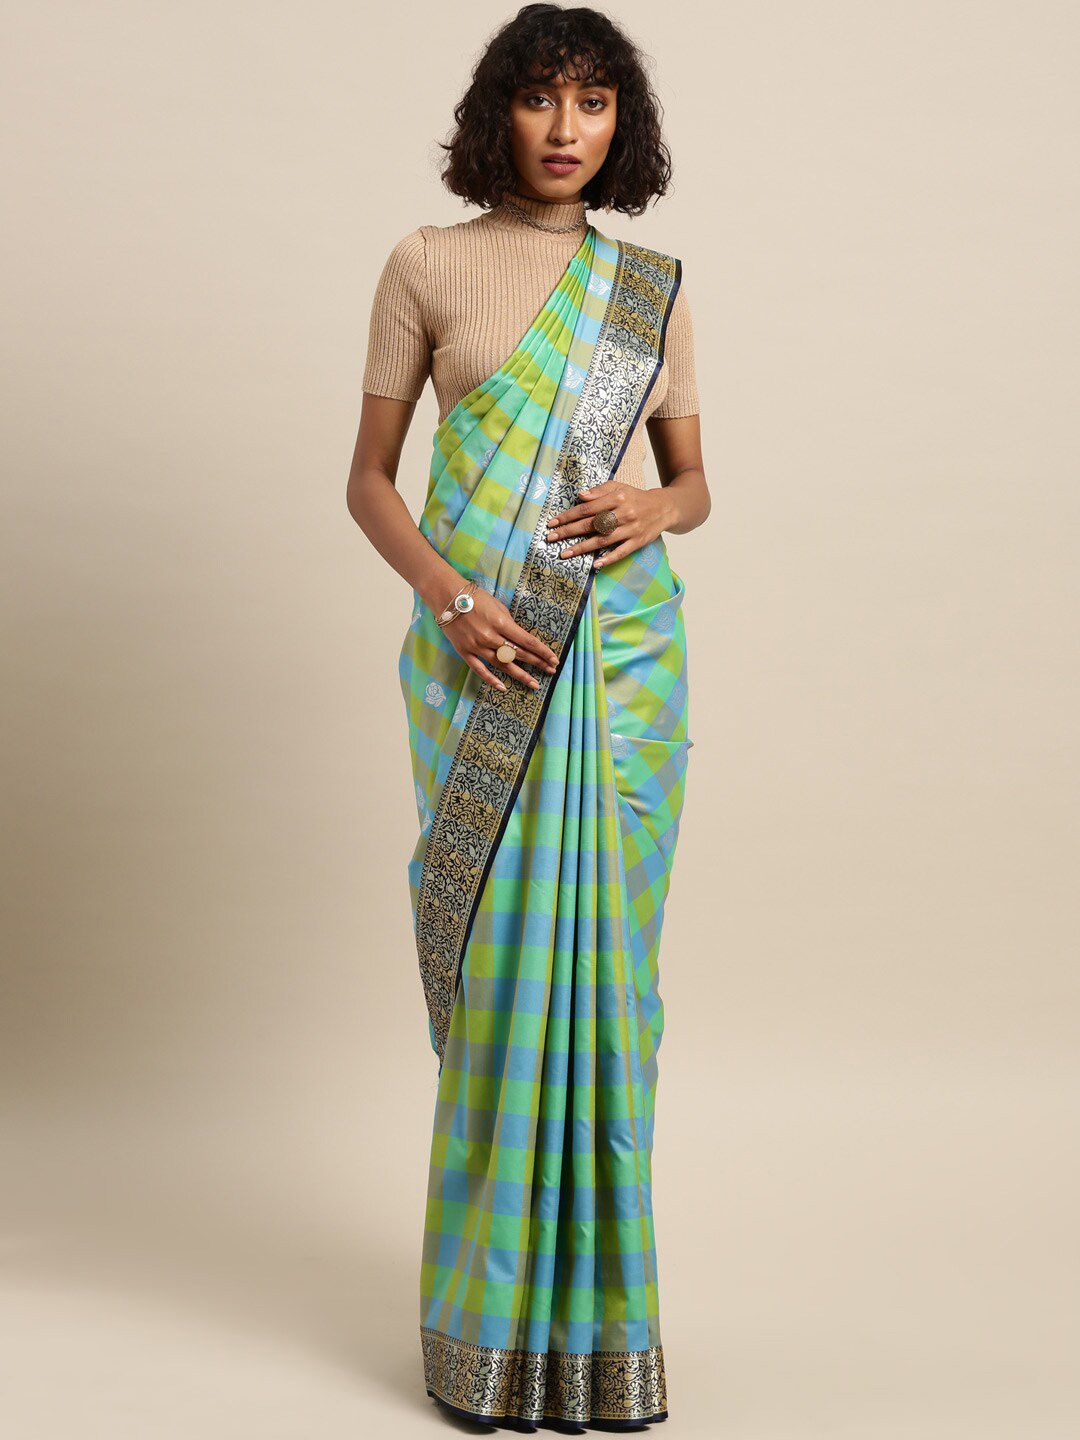 Varkala Silk Sarees Teal & Gold-Toned Checked Zari Silk Blend Kanjeevaram Saree Price in India